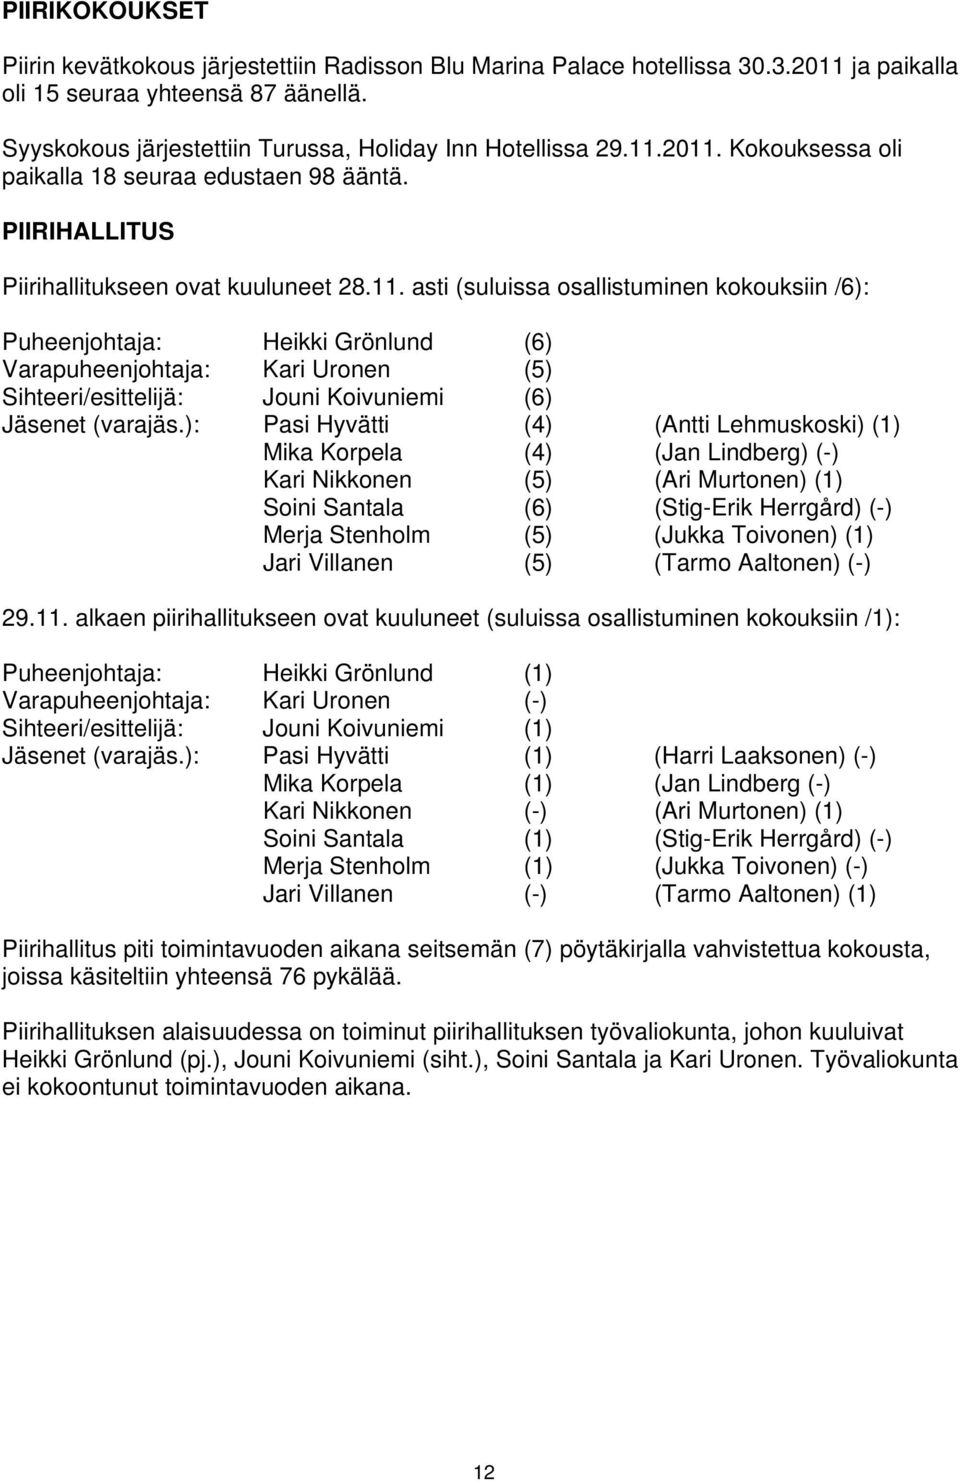 2011. Kokouksessa oli paikalla 18 seuraa edustaen 98 ääntä. PIIRIHALLITUS Piirihallitukseen ovat kuuluneet 28.11. asti (suluissa osallistuminen kokouksiin /6): Puheenjohtaja: Heikki Grönlund (6) Varapuheenjohtaja: Kari Uronen (5) Sihteeri/esittelijä: Jouni Koivuniemi (6) Jäsenet (varajäs.